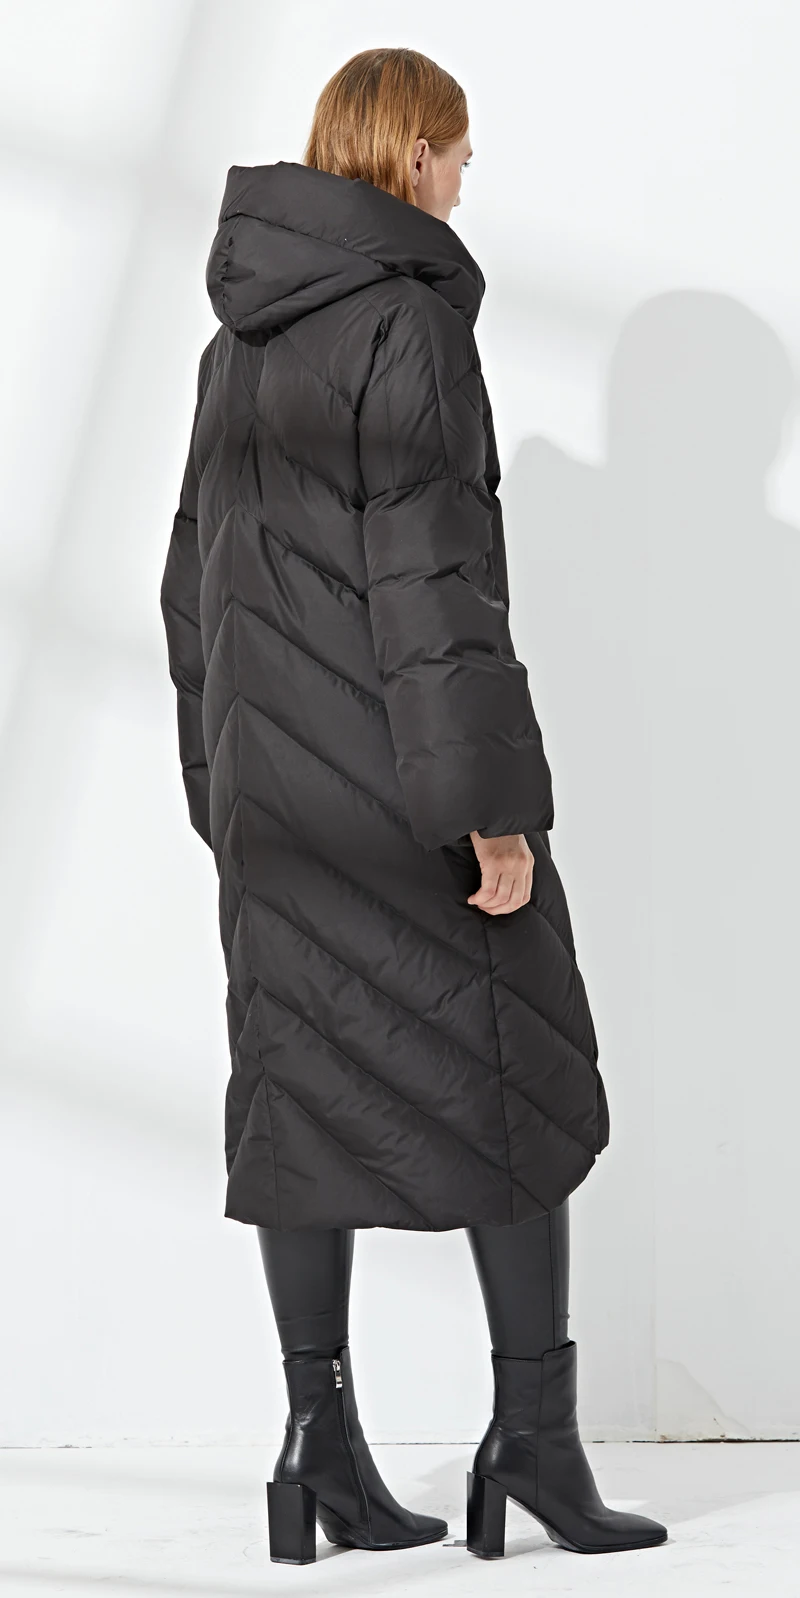 Ynzzu 2018 брендовые зимние Для женщин пуховик Винтаж длинные 90% Белое пуховое пальто Для женщин толстый теплый с капюшоном женская верхняя